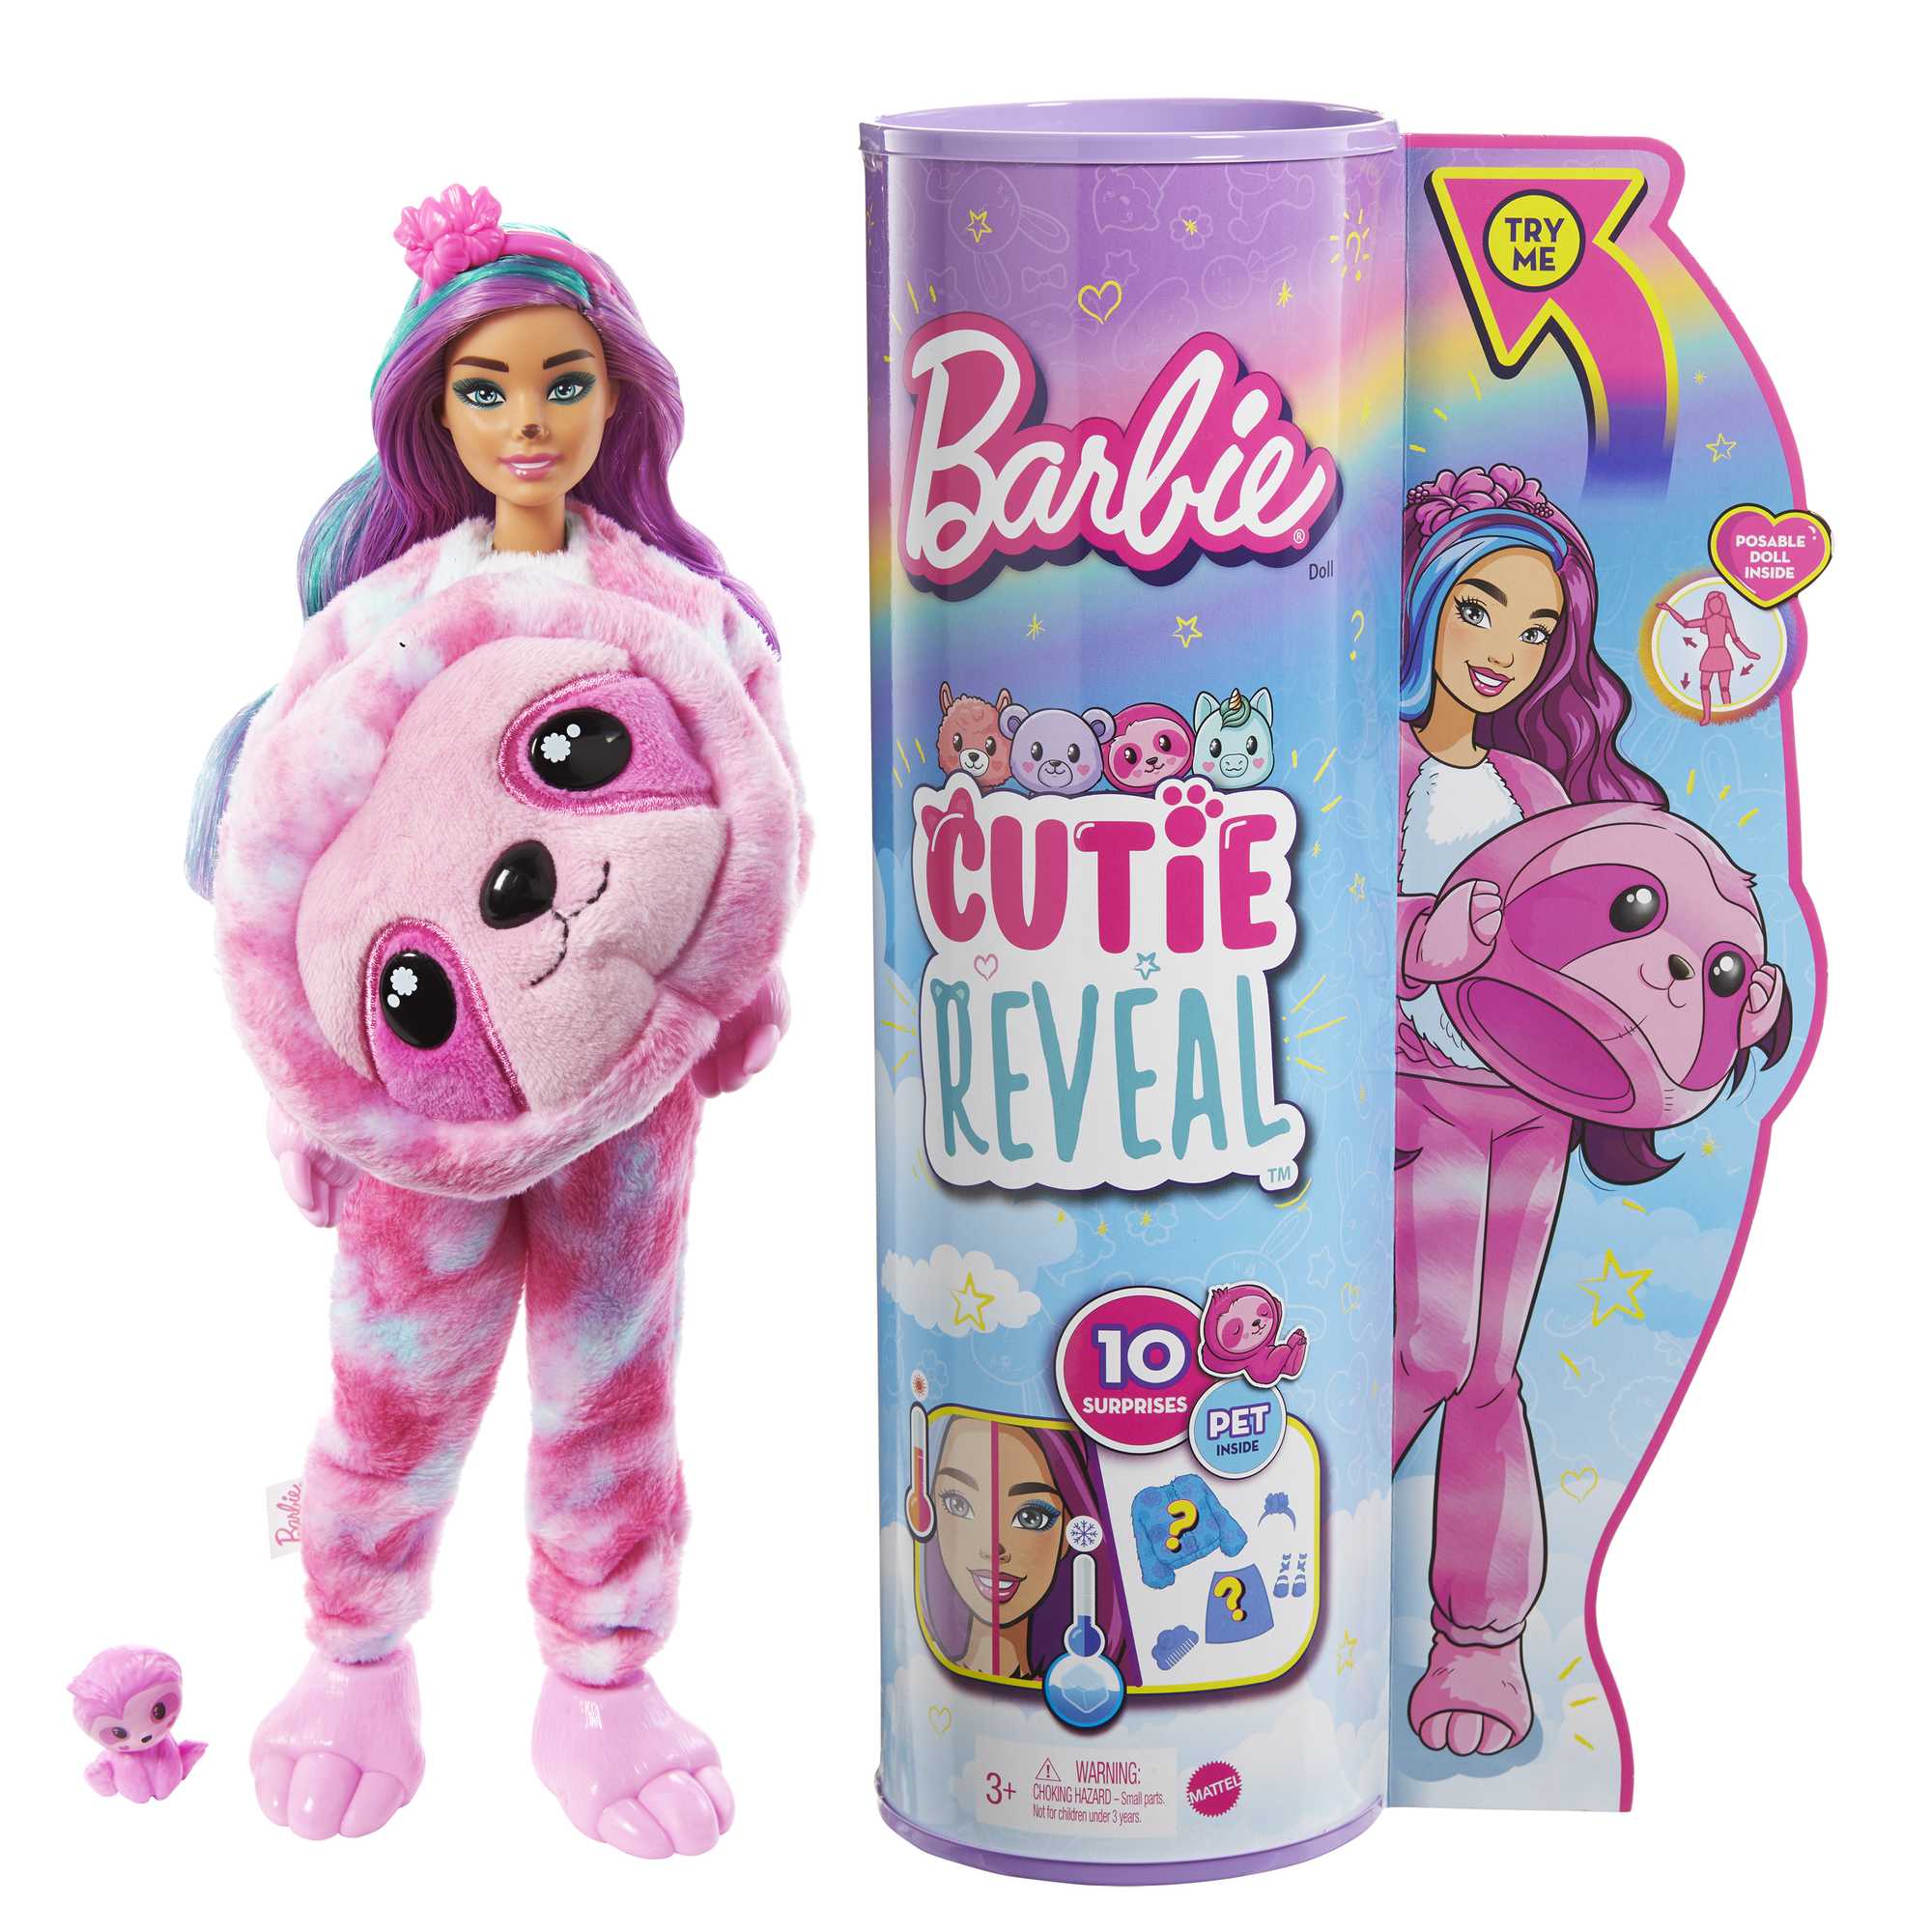 Barbie Cutie Reveal Doll HJL59 | Mattel